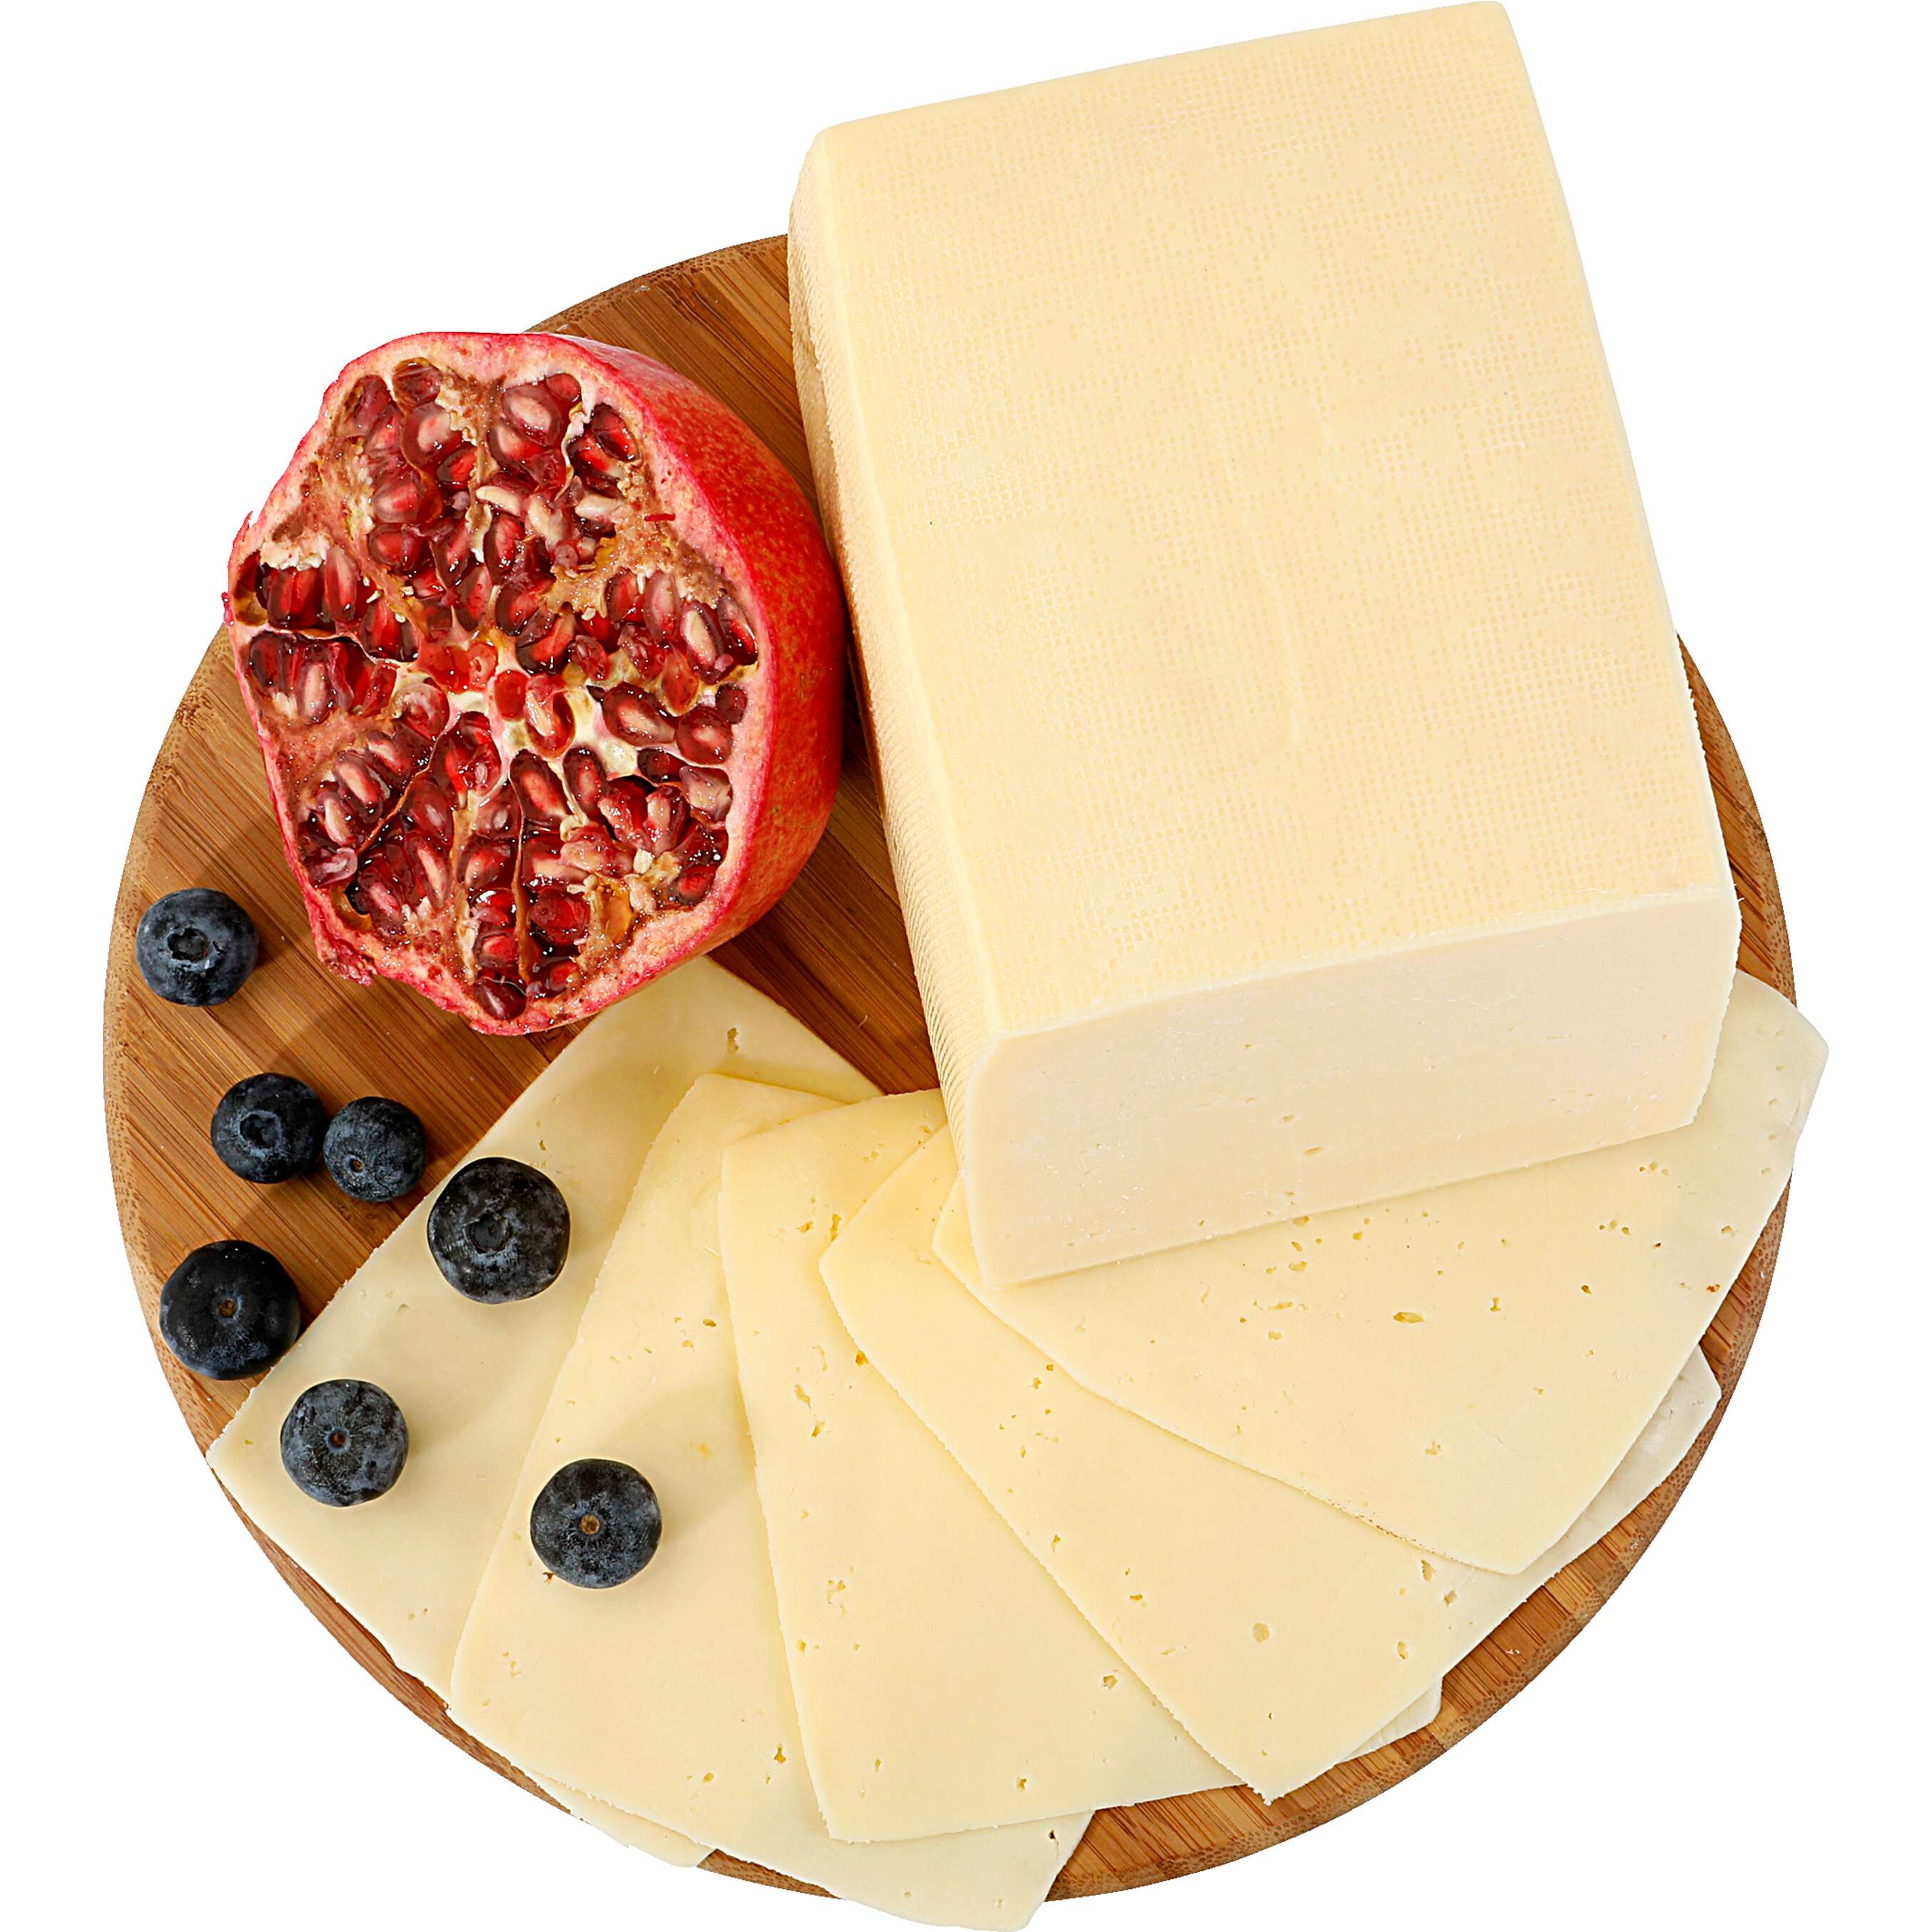 Zobrazit nabídku Eidam 45% Sýr přírodní polotvrdý